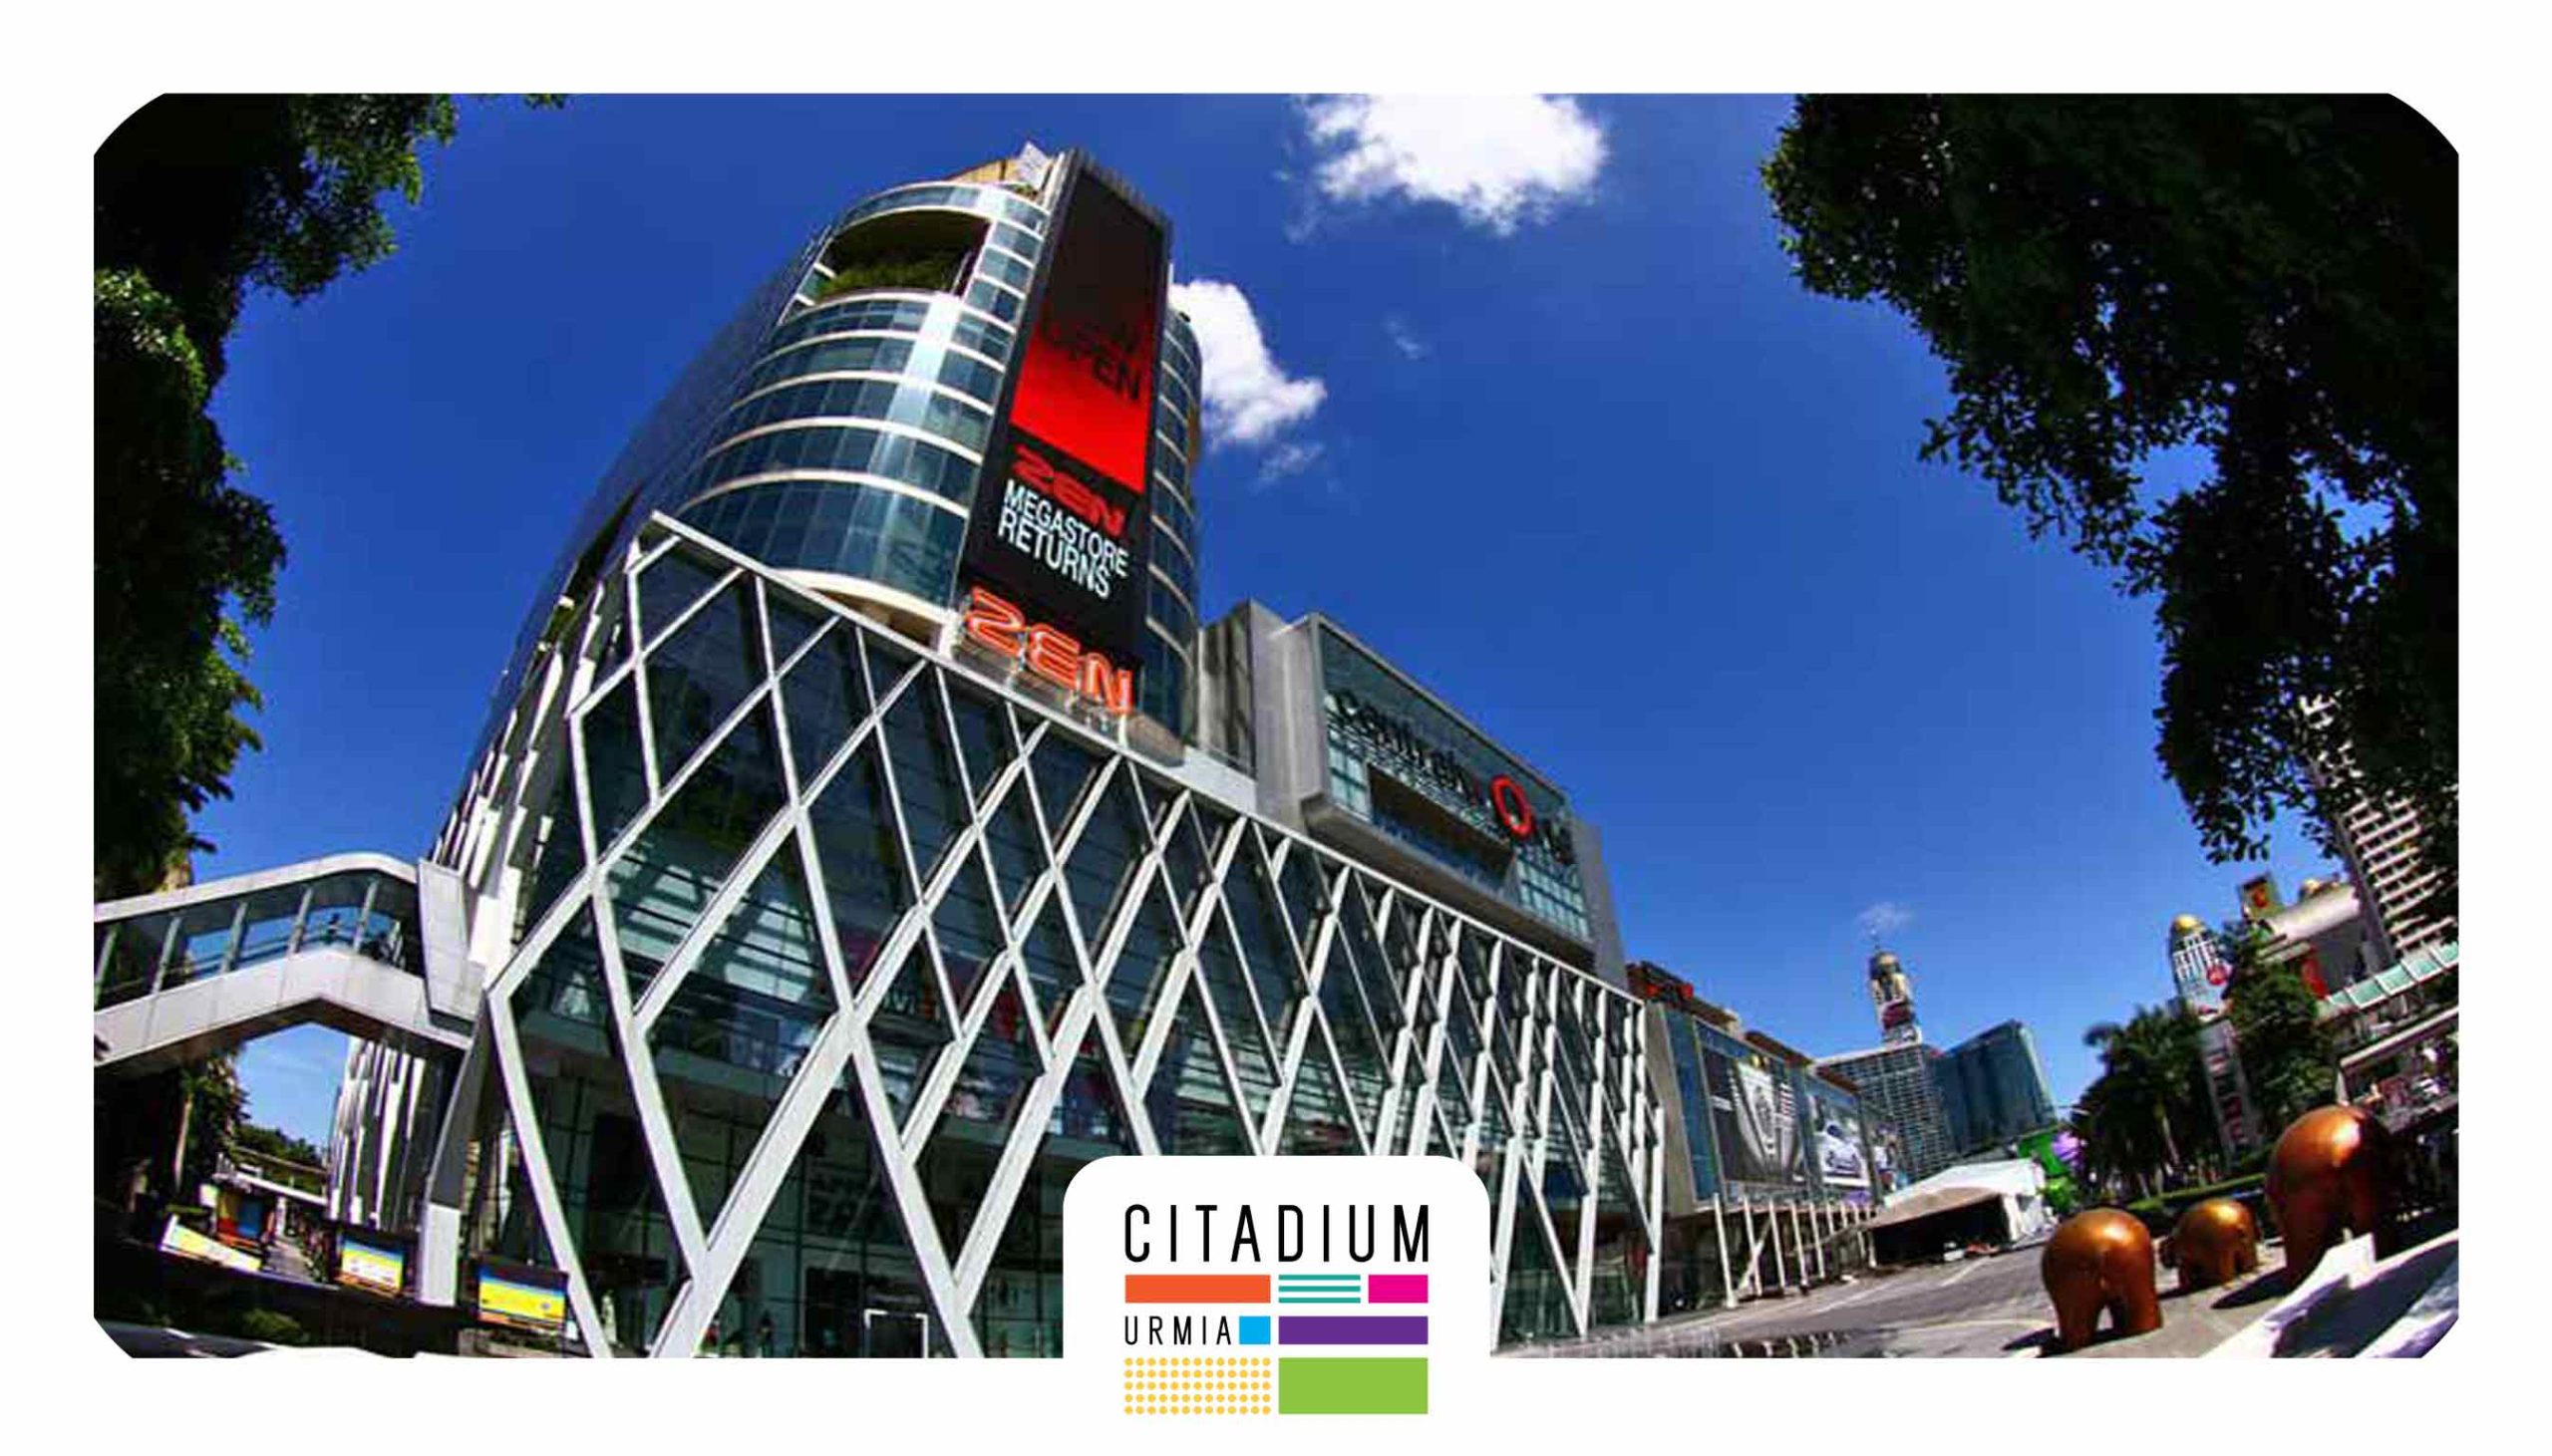 سنترال وورد بانکوک-تایلند-بهترین مرکز خرید در دنیا 